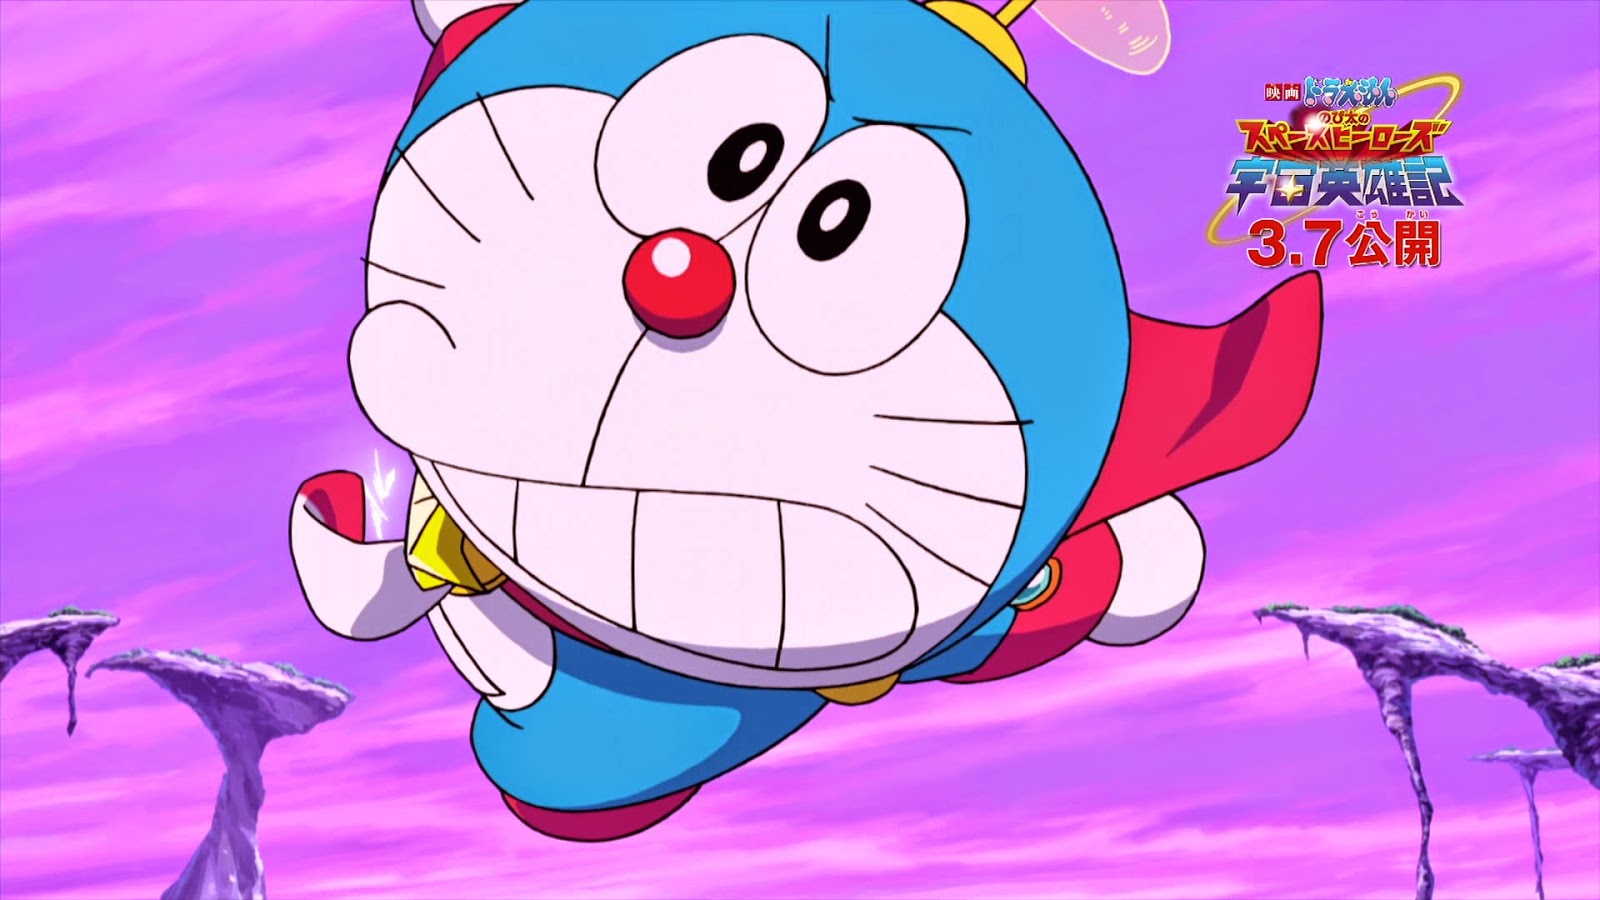 Wallpaper Doraemon Untuk Laptop - WallpaperSafari